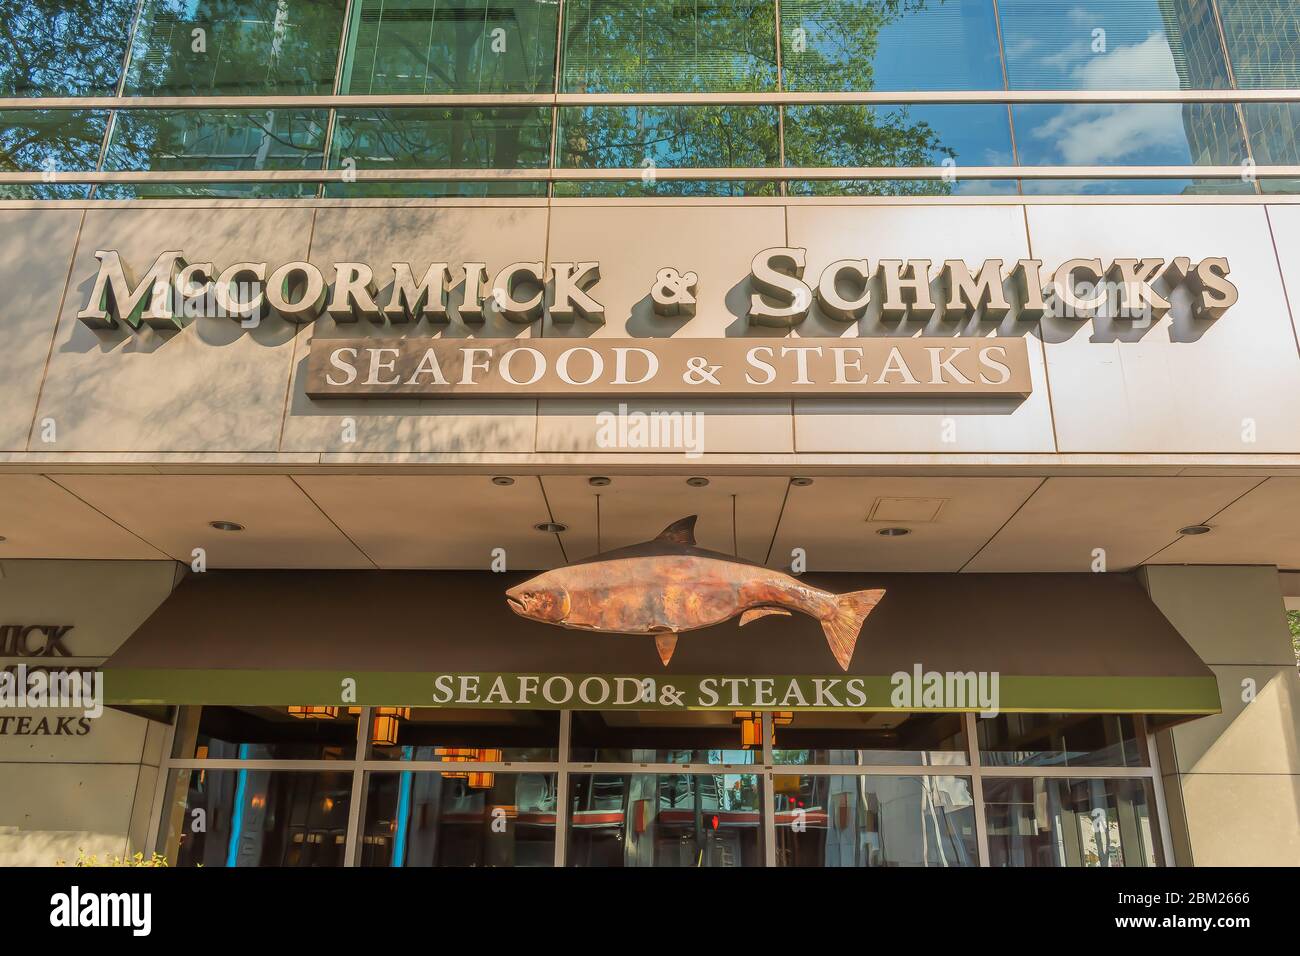 Charlotte, NC/USA - 26 mai 2019 : façade du restaurant McCormick & Schmick's Seafood & steaks affichant la marque en lettres blanches et enseigne à poisson suspendue. Banque D'Images